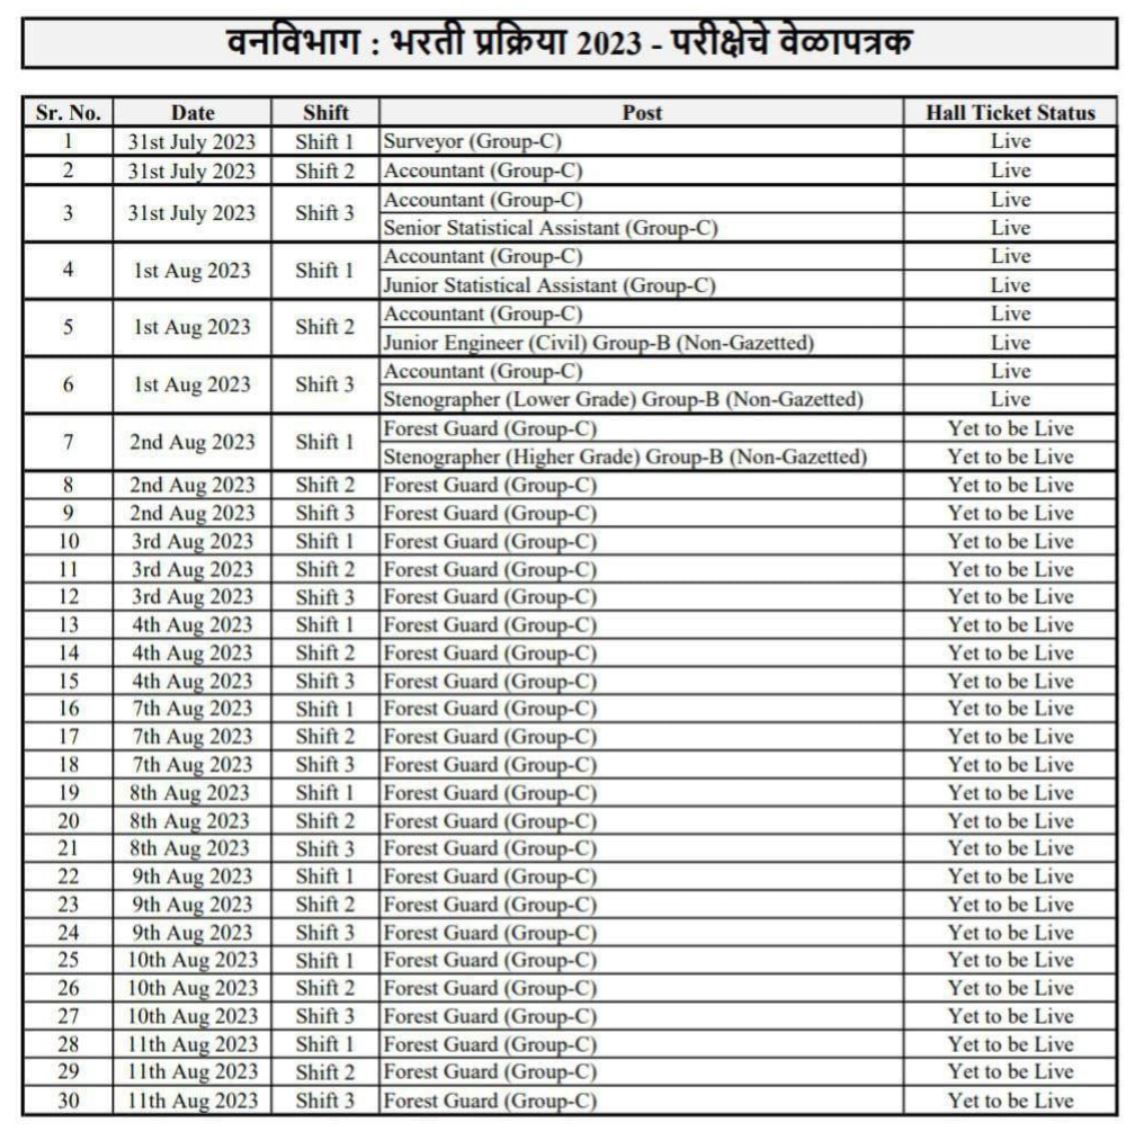 Van Vibhga Exam Schedule 2023 Timetable